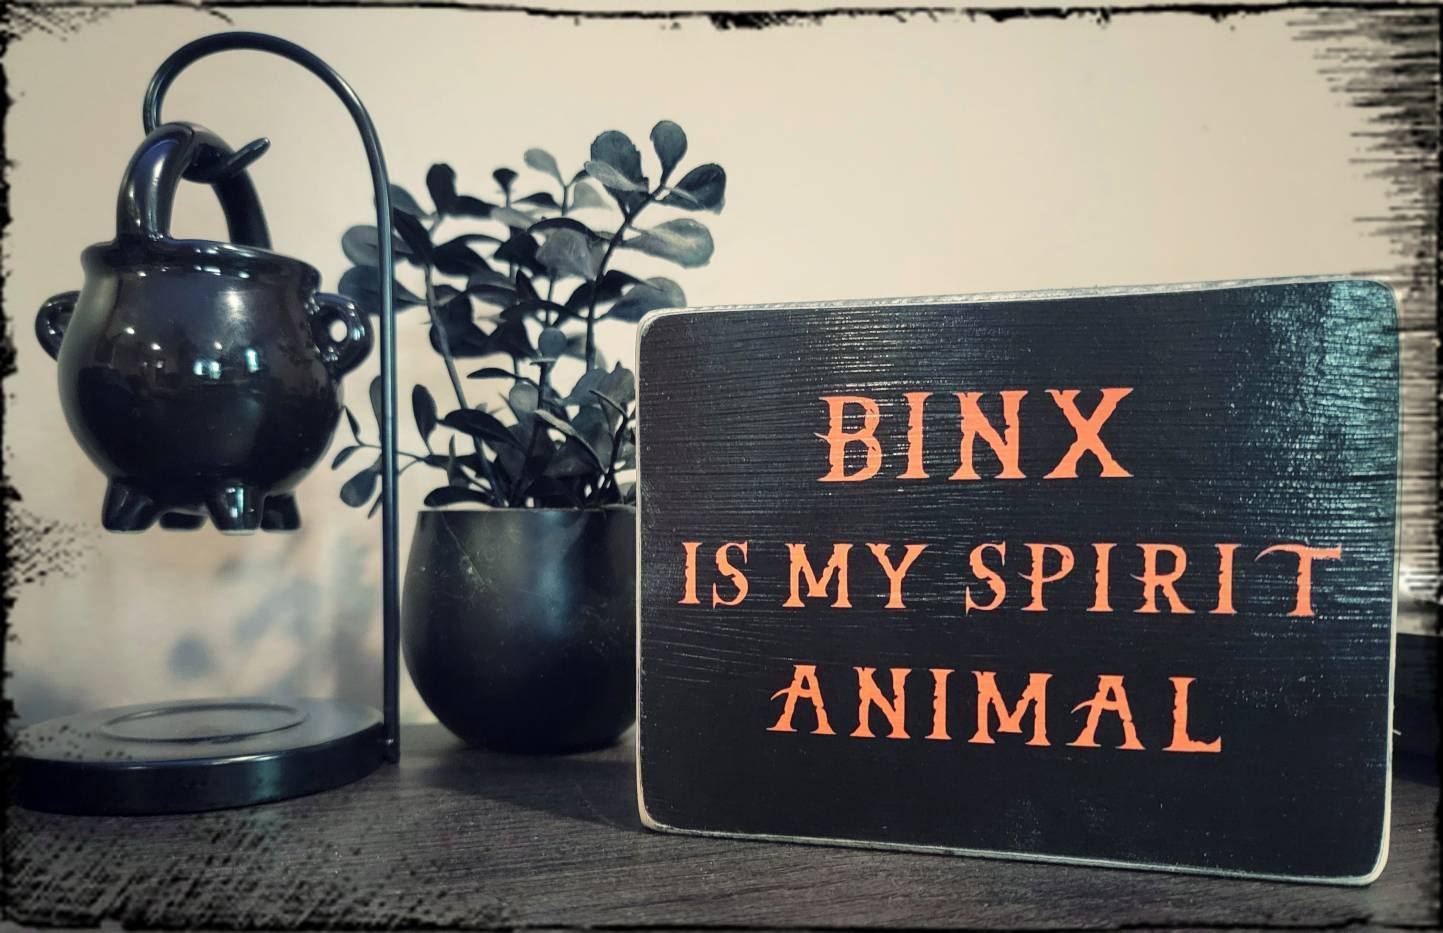 Spirit animal box sign